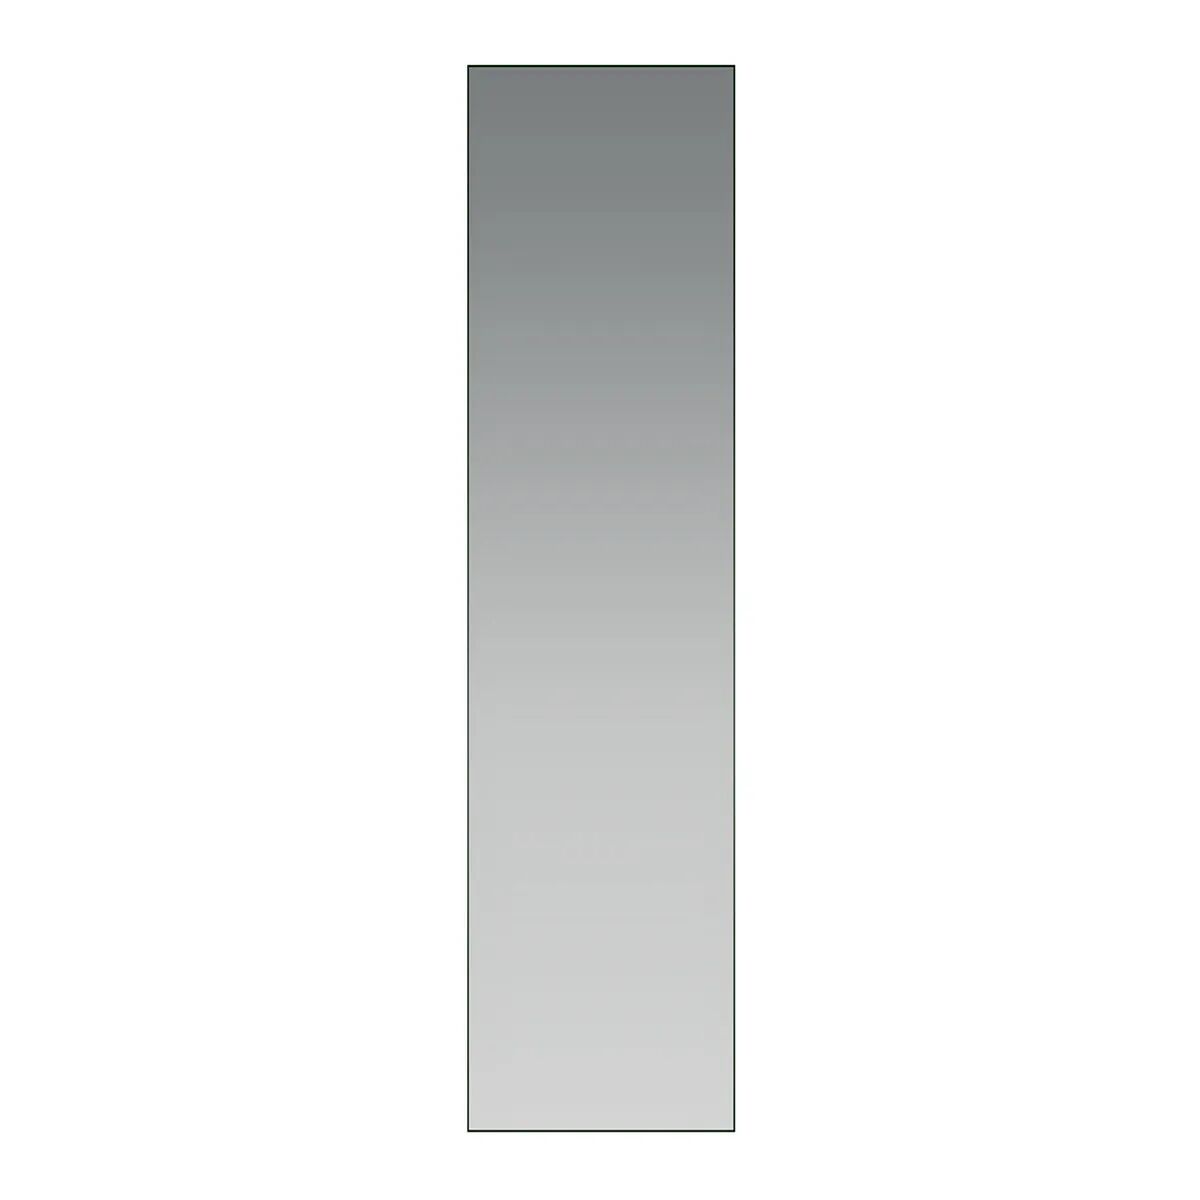 Specchio Simple Filo Lucido 30x120 Cm (Lxh)